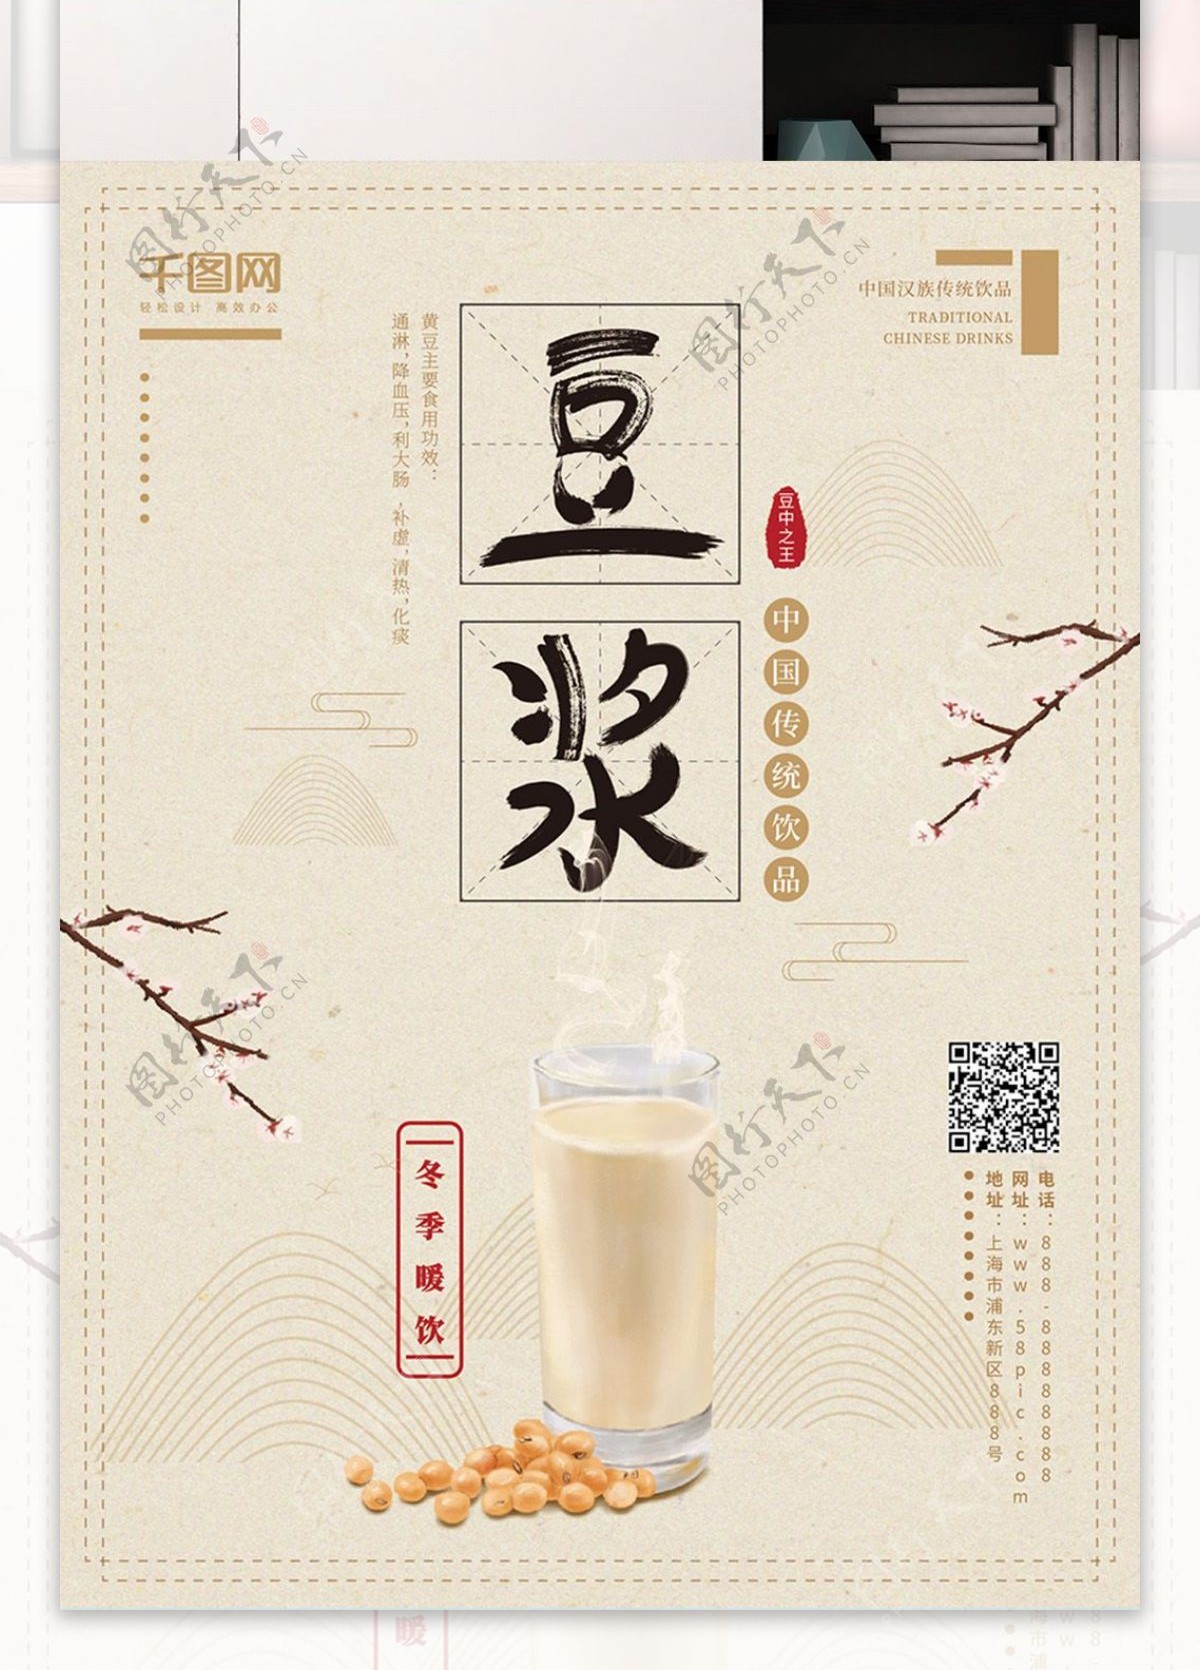 原创手绘淡雅中国风冬季热饮豆浆宣传海报